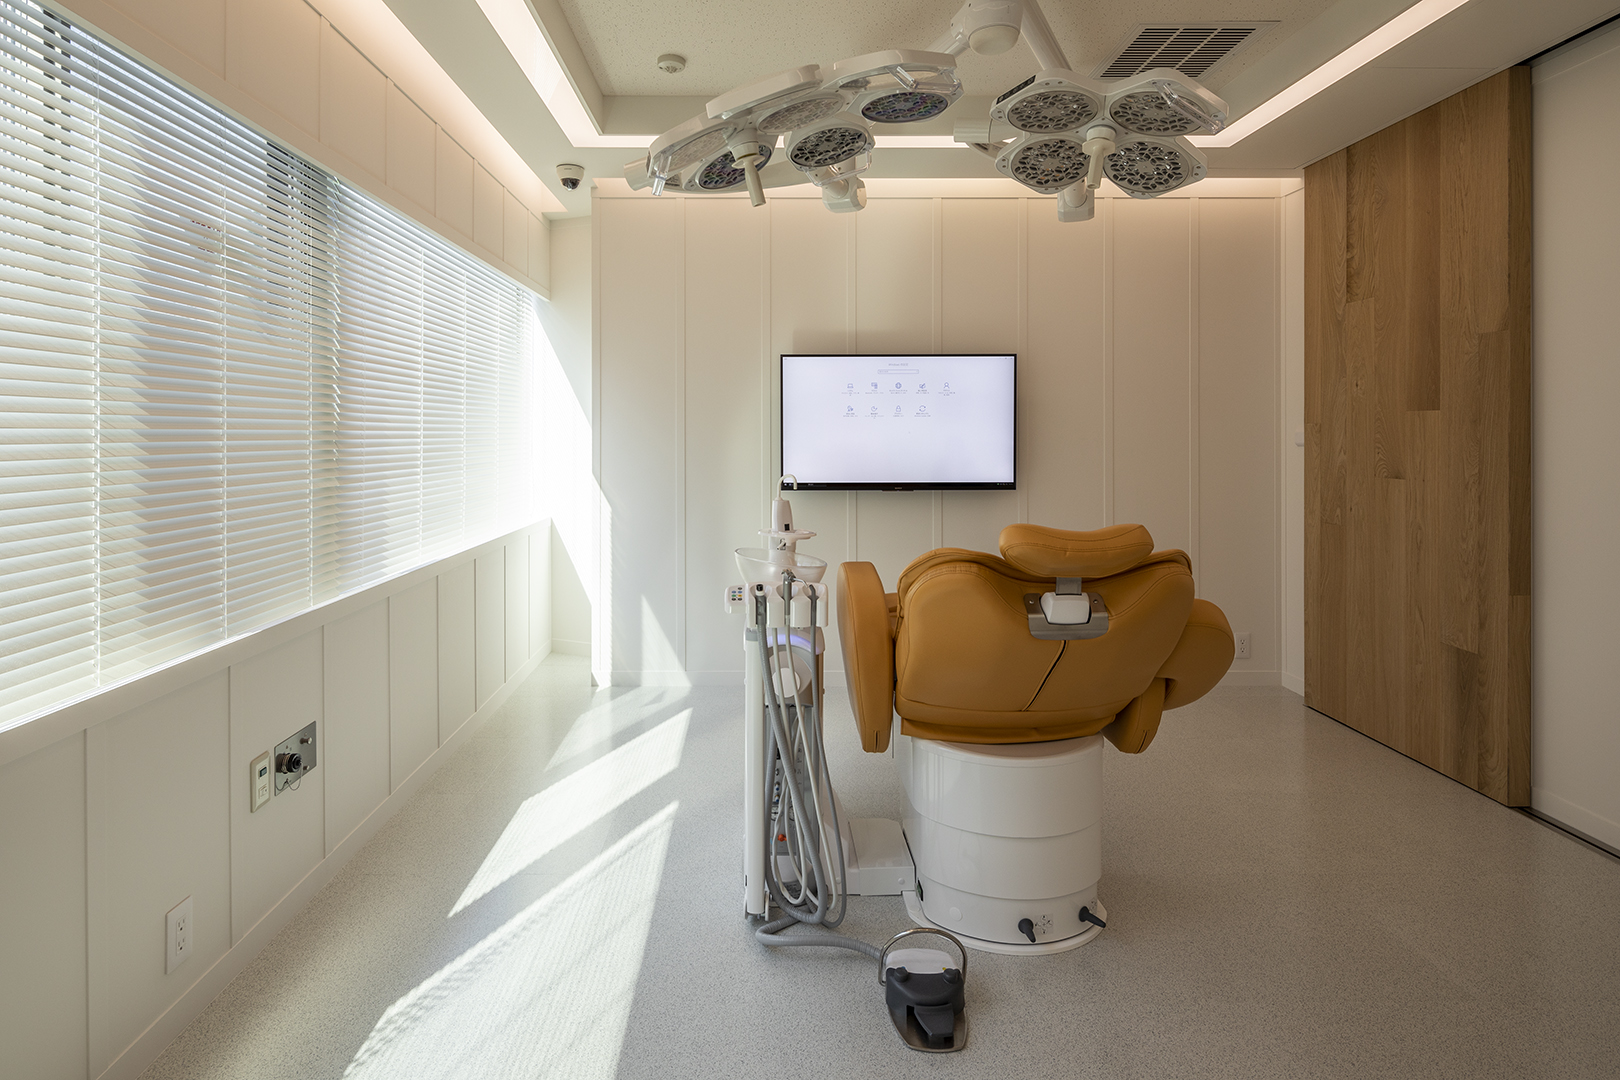 歯科医院の内装デザイン、内装設計、建築デザインを、ジョイントセンターがクリエイティブな発想でご提案します。人に優しく衛生的、シンプルでおしゃれな歯科デザインで、デンタルクリニックをサポートします。